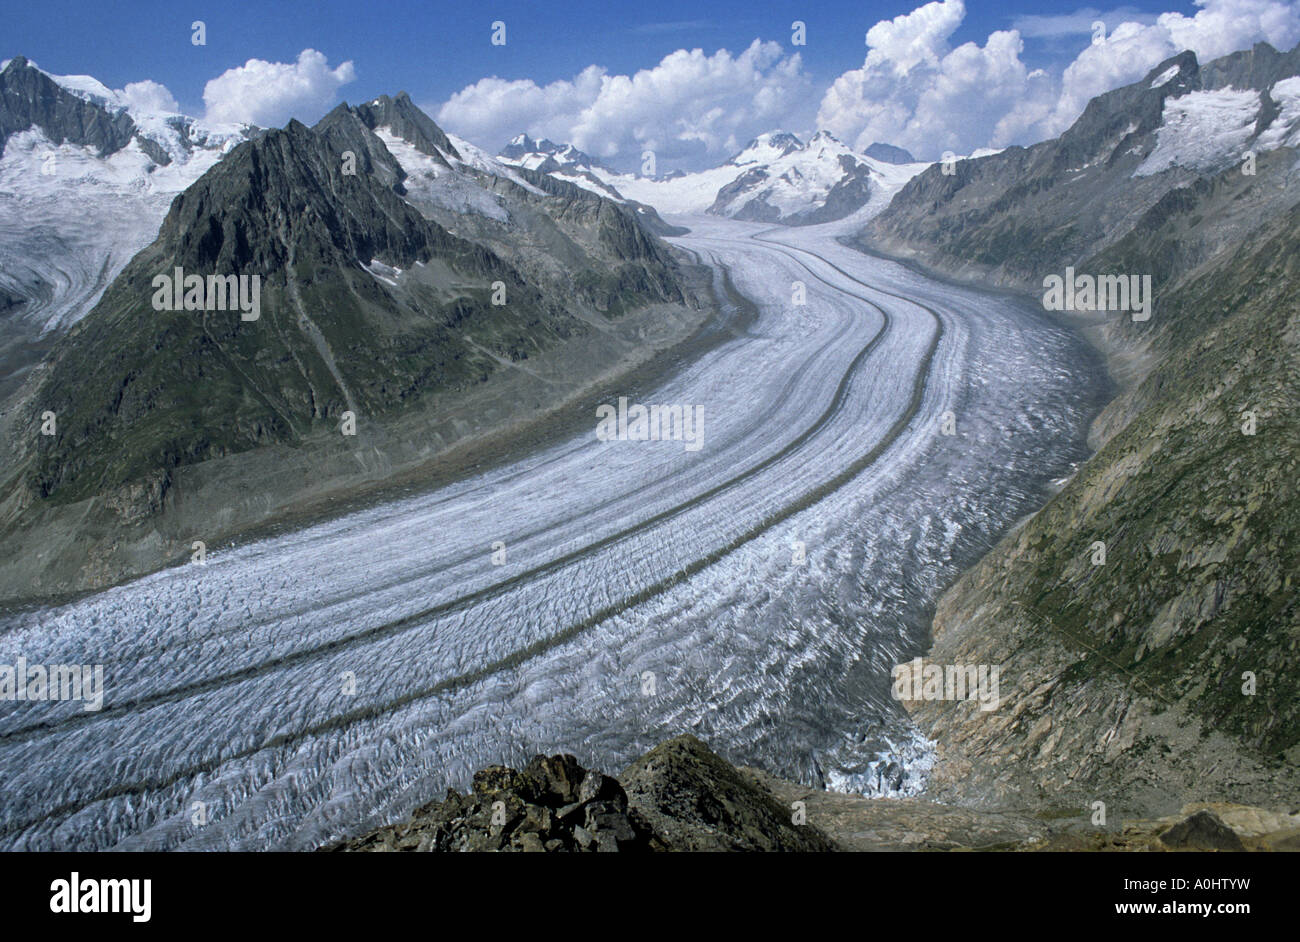 Europa alpes suizos Ice stream glaciar Aletsch caliente global Foto de stock